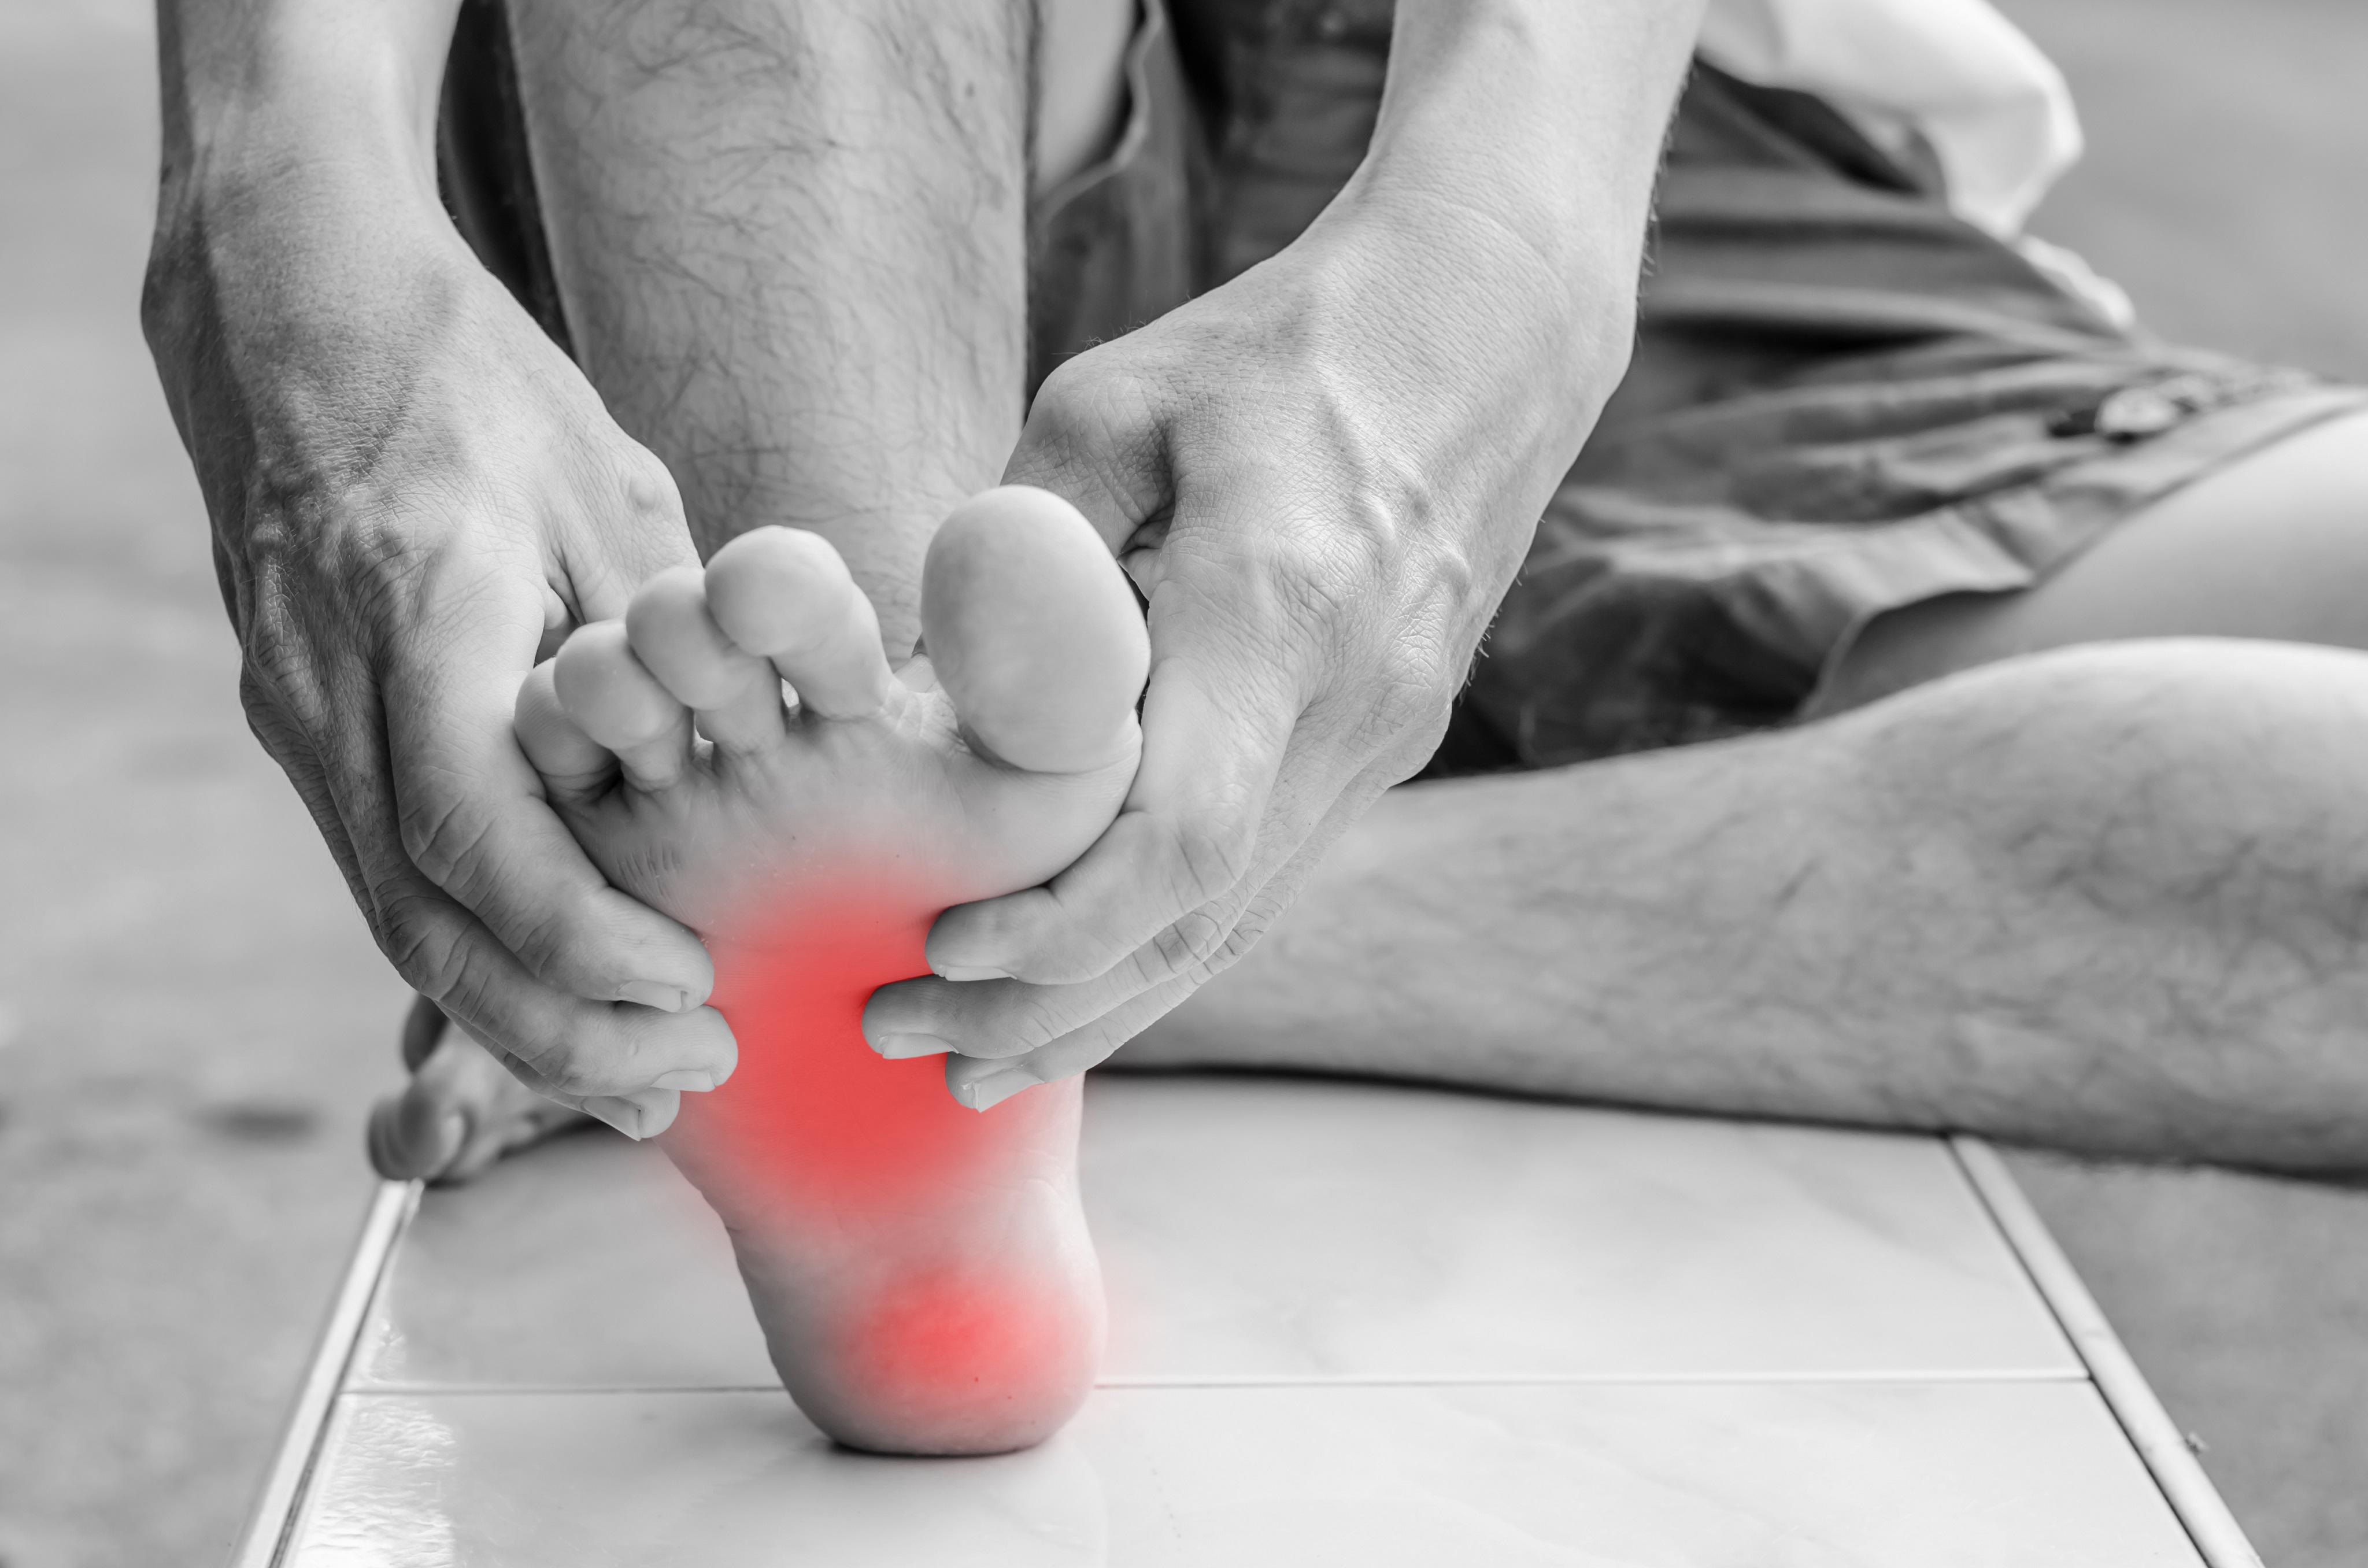 Foot Injuries | Foot Disorders | MedlinePlus